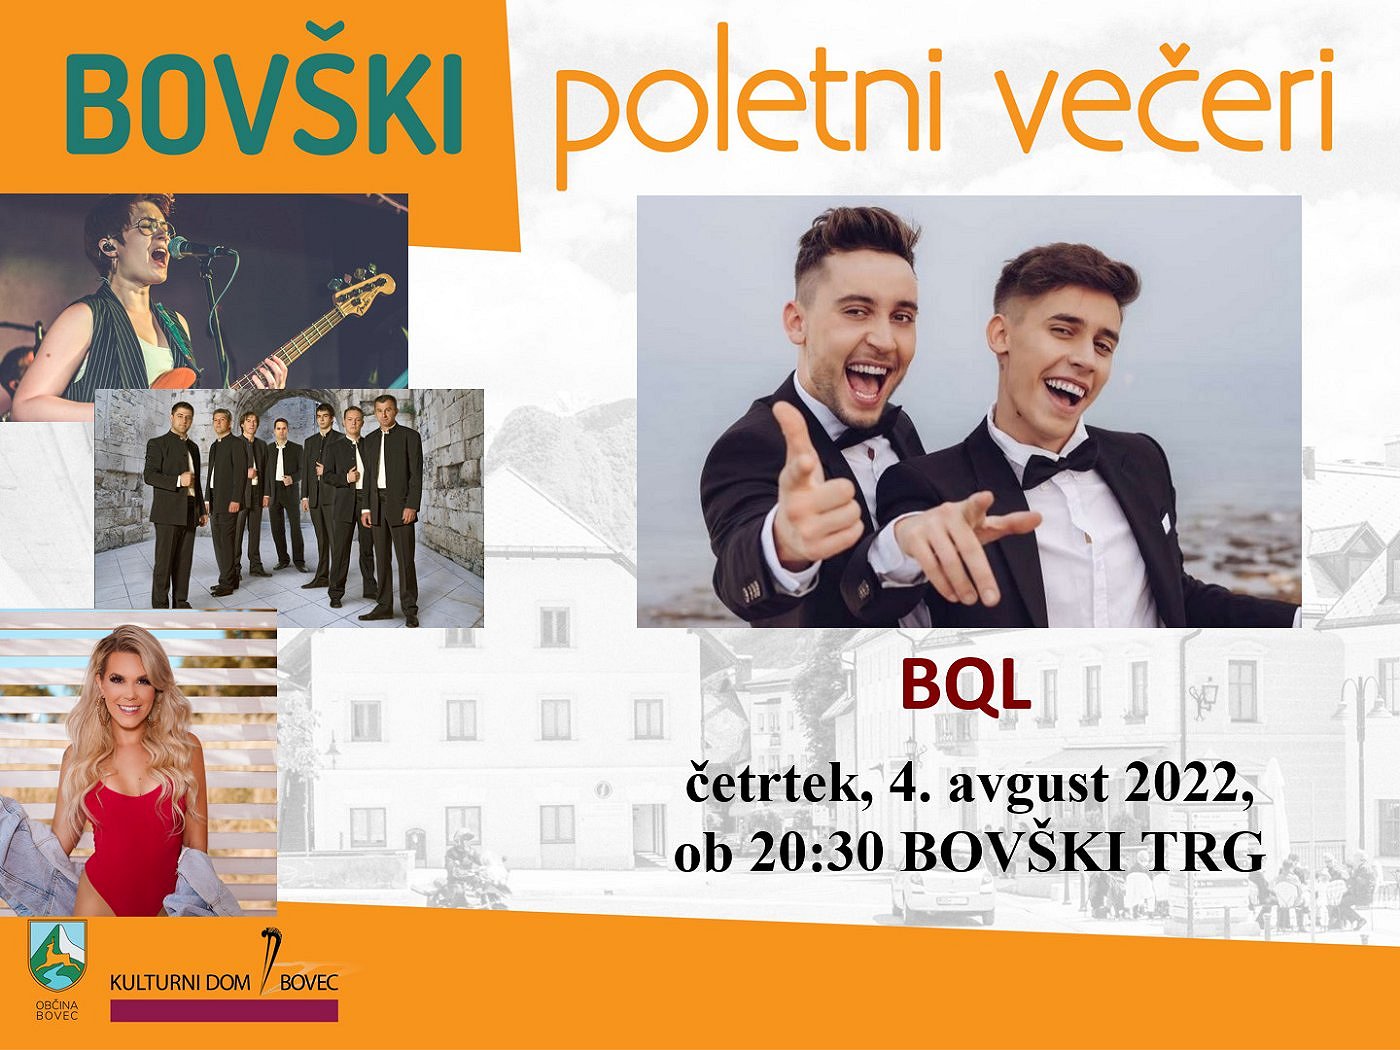 Bovški poletni večeri 2022 - BQL